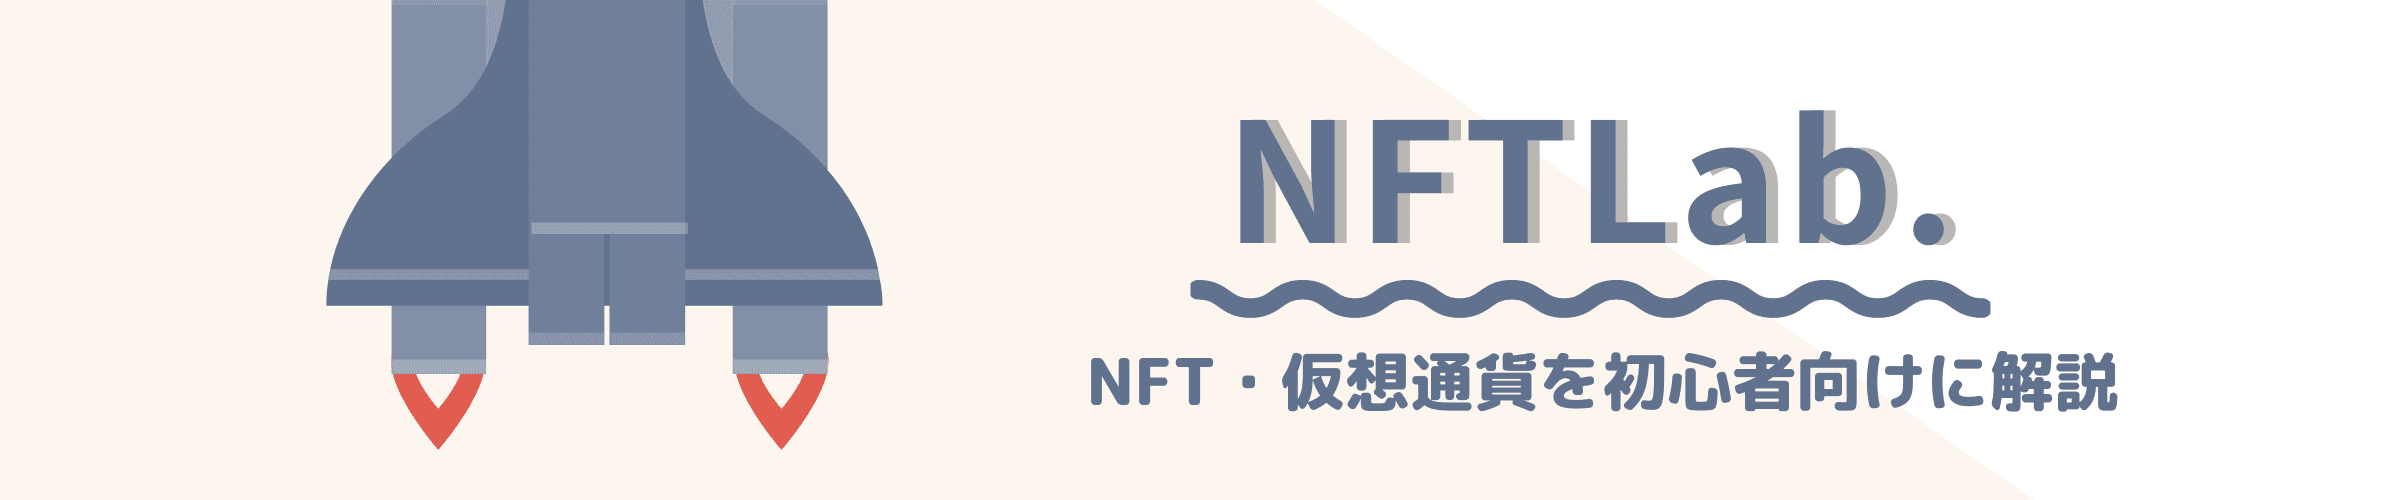 Tetsuko_NFT banner